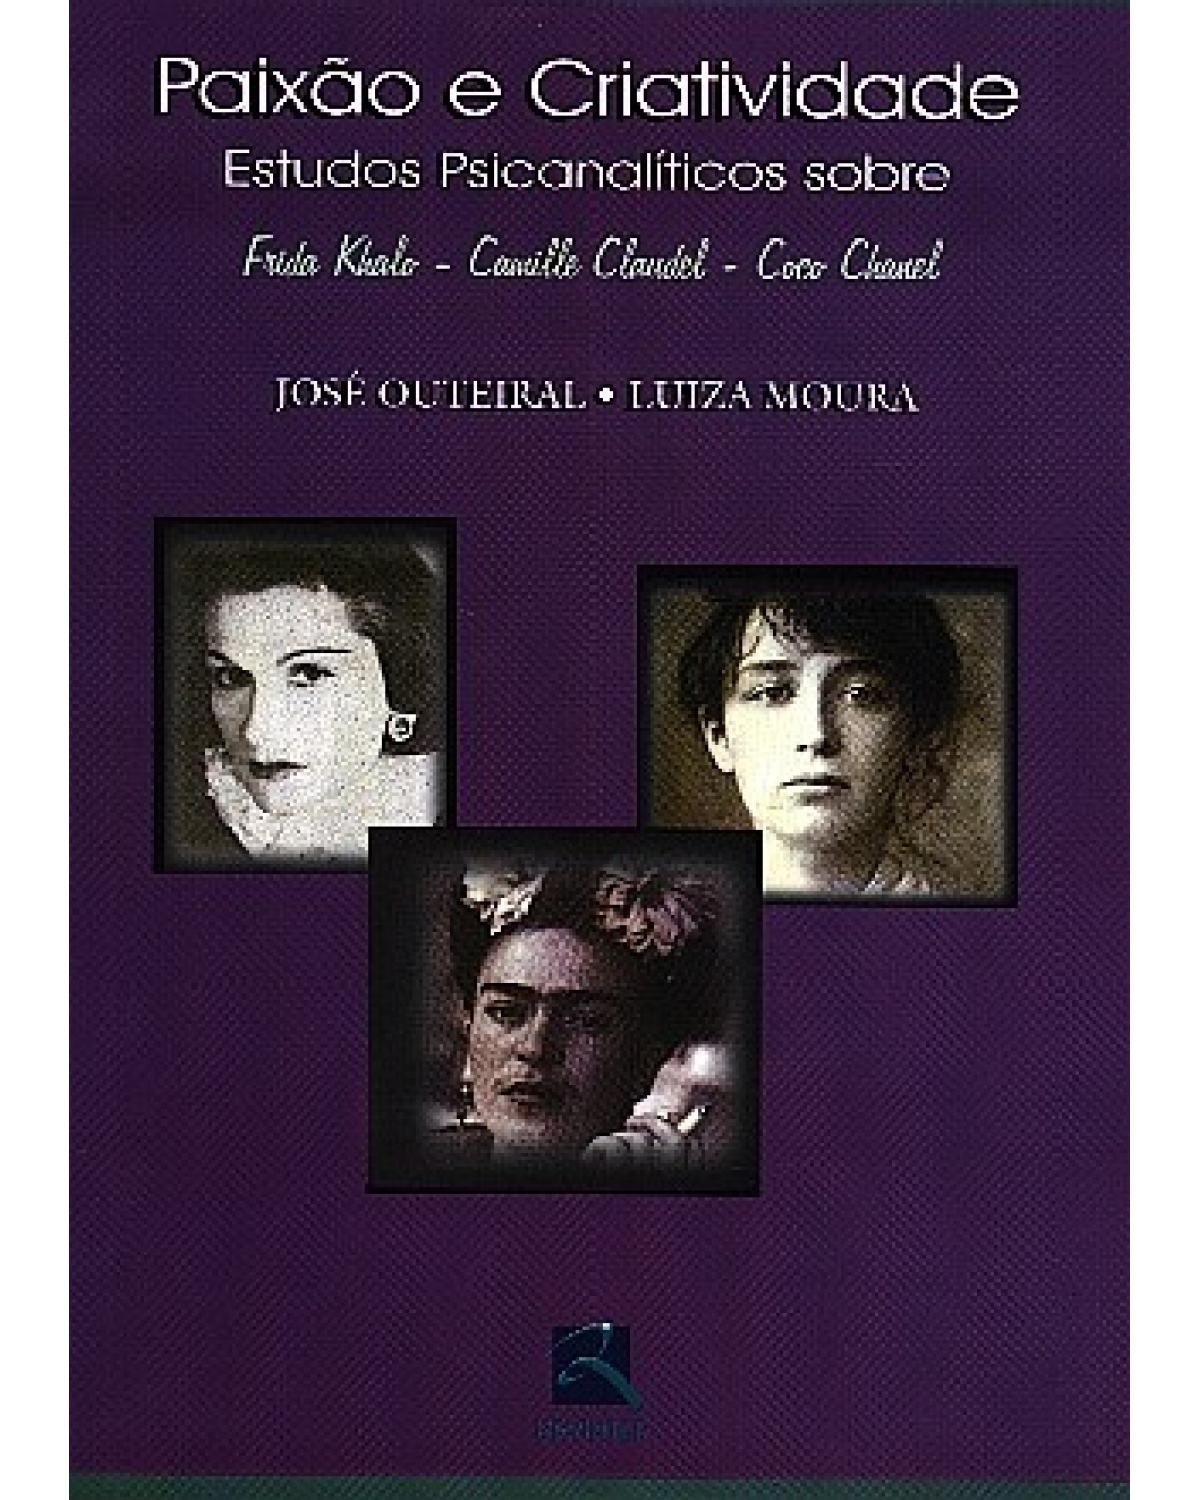 Paixão e criatividade - estudos psicanalíticos sobre Frida Kahlo, Camille Claudel e Coco Chanel - 2ª Edição | 2002